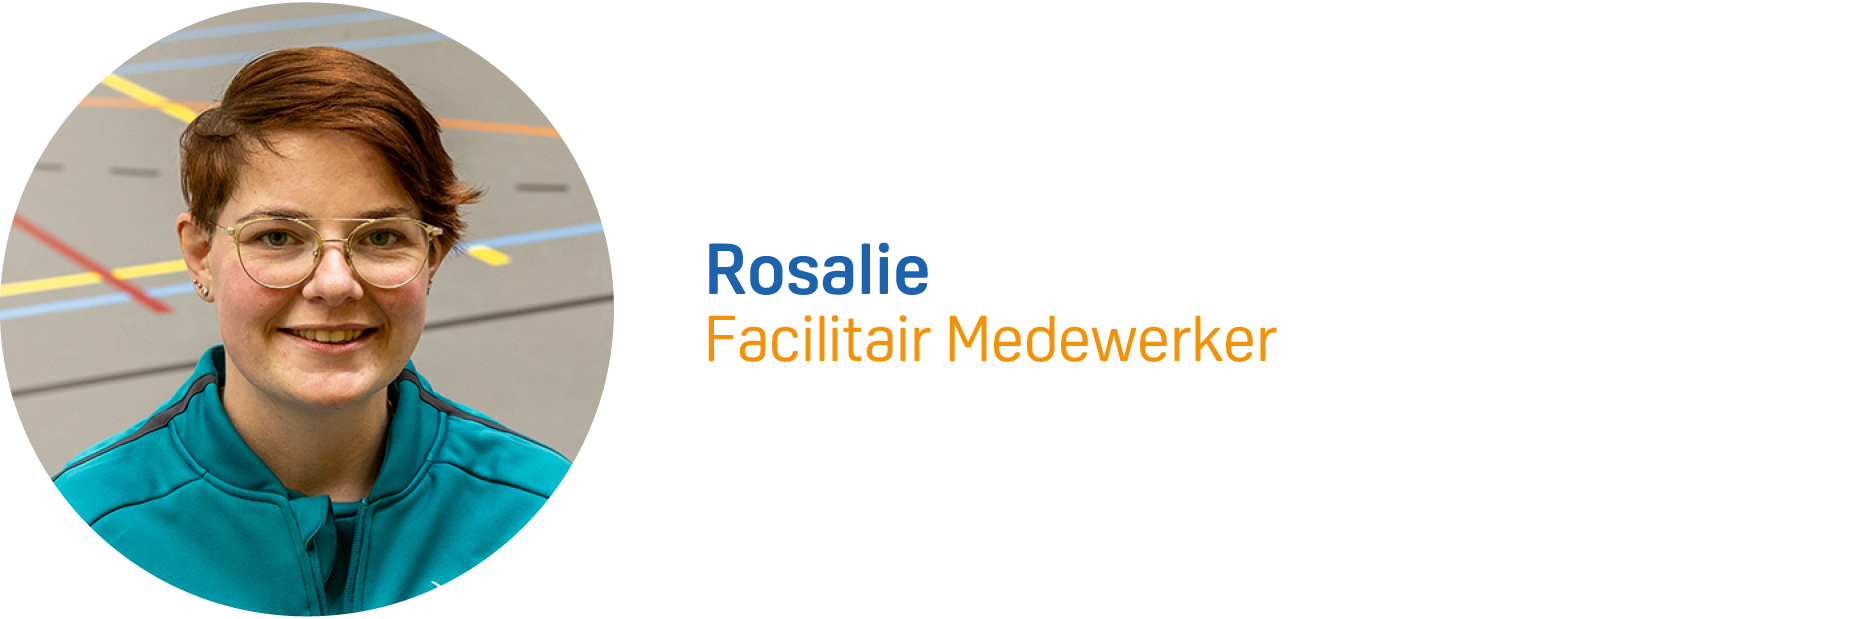 Rosalie Visite.png